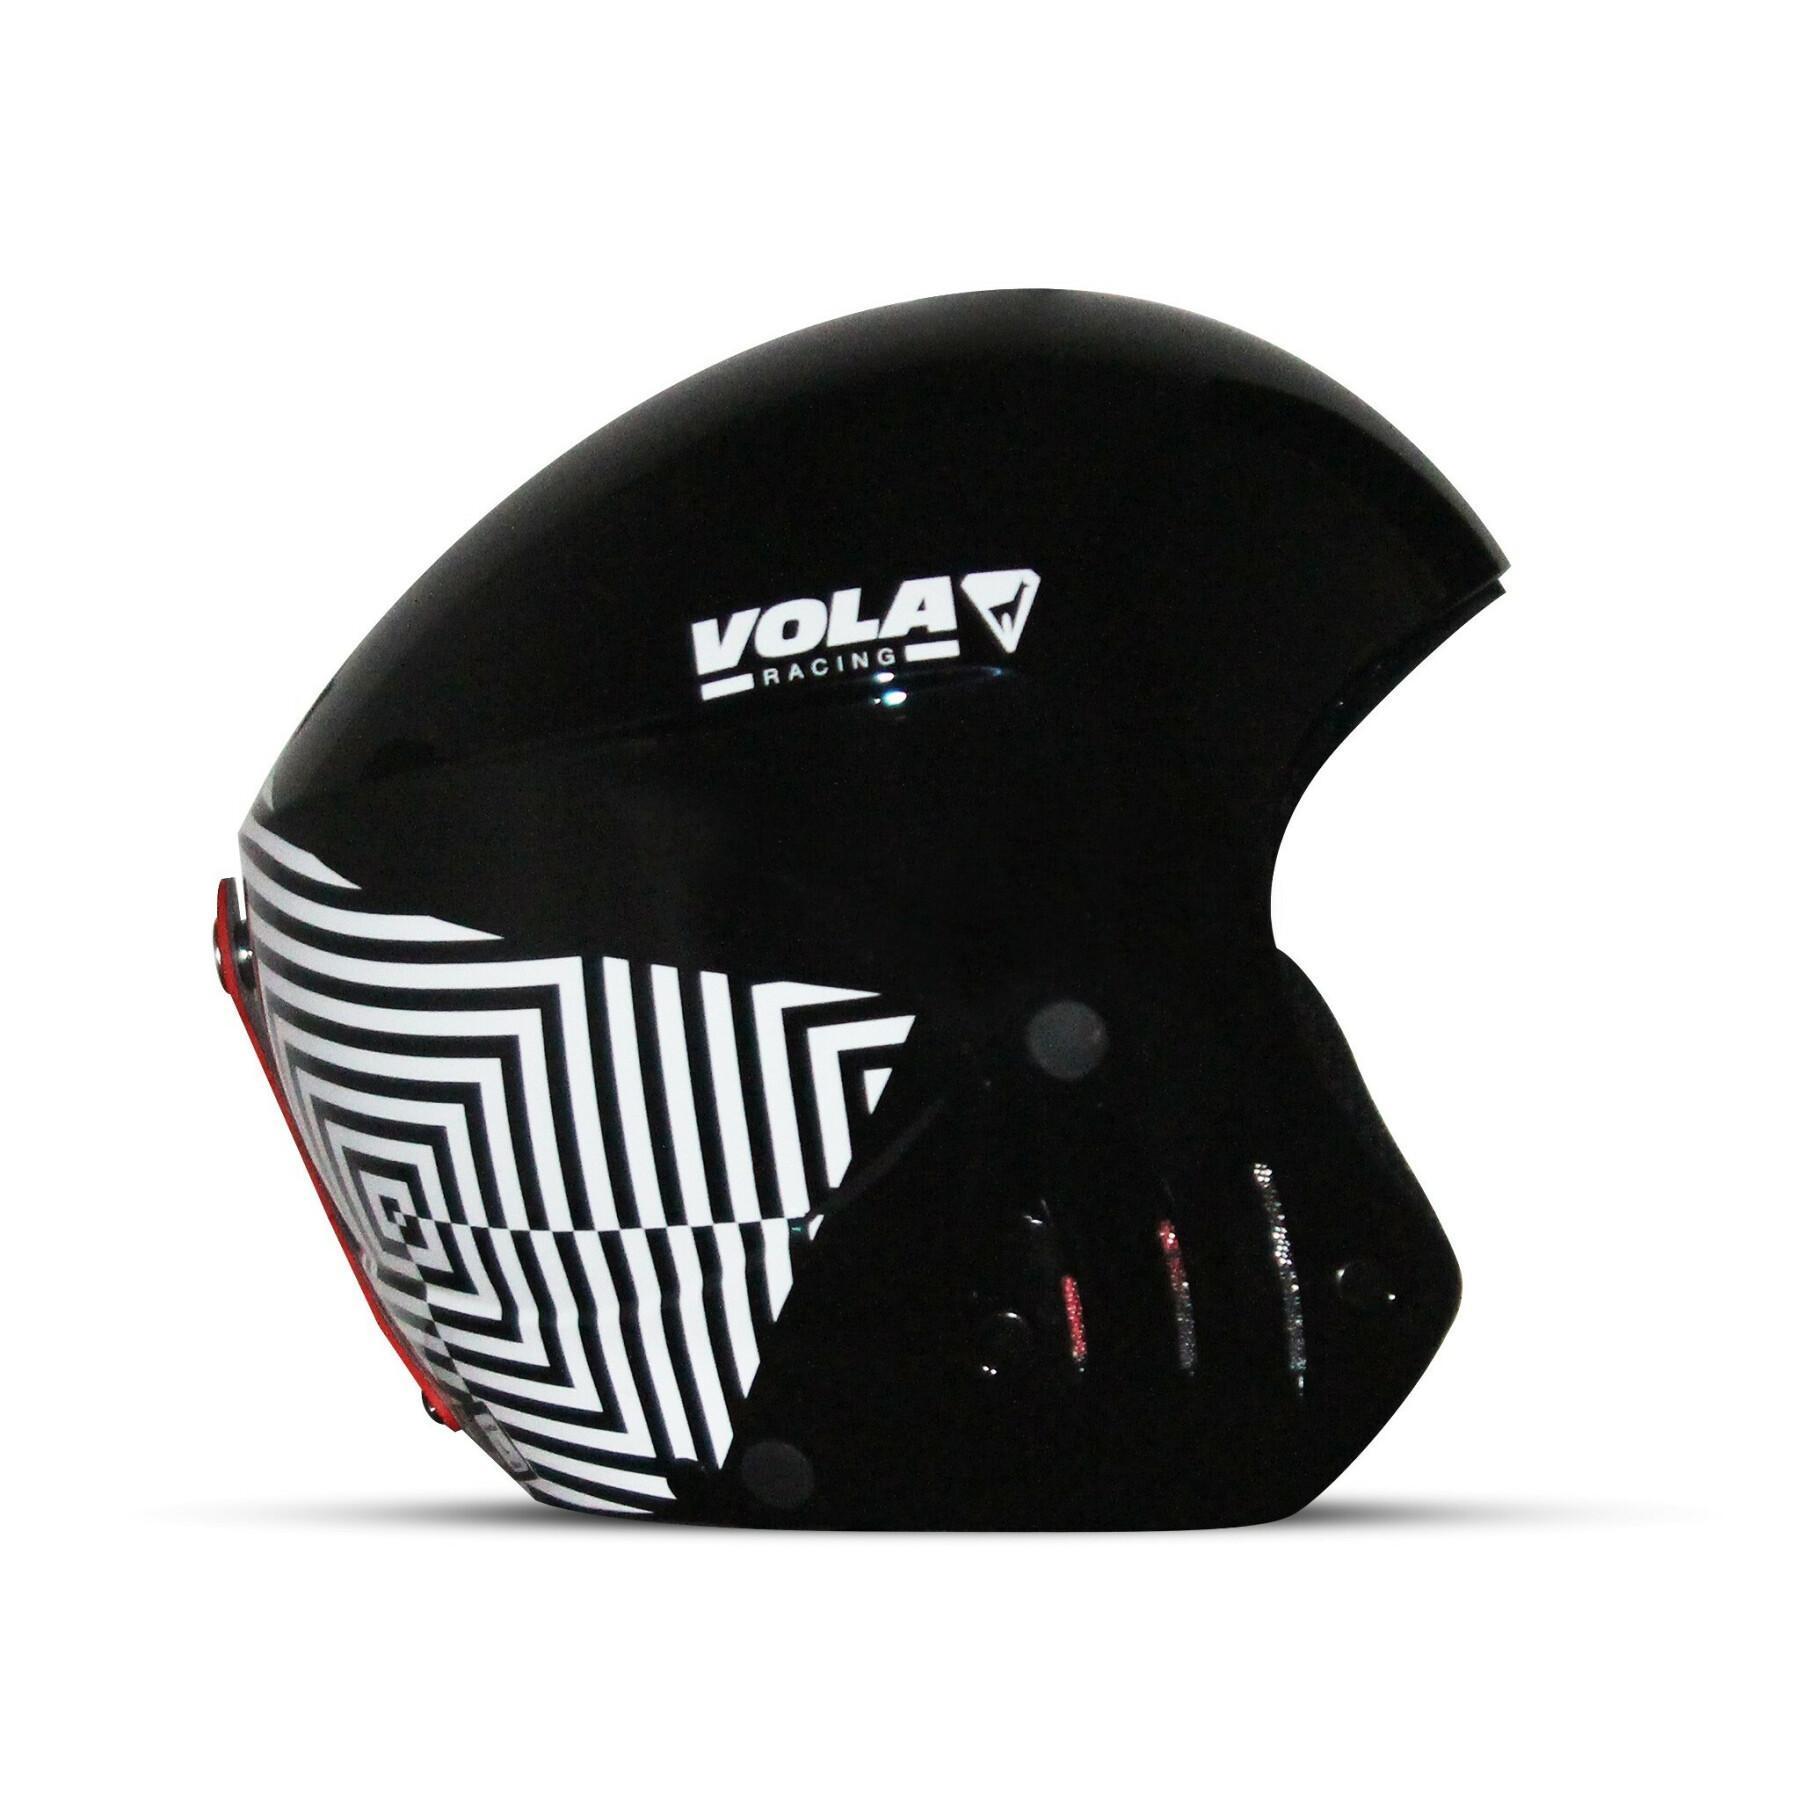 Ski helmet Vola Fis Optical